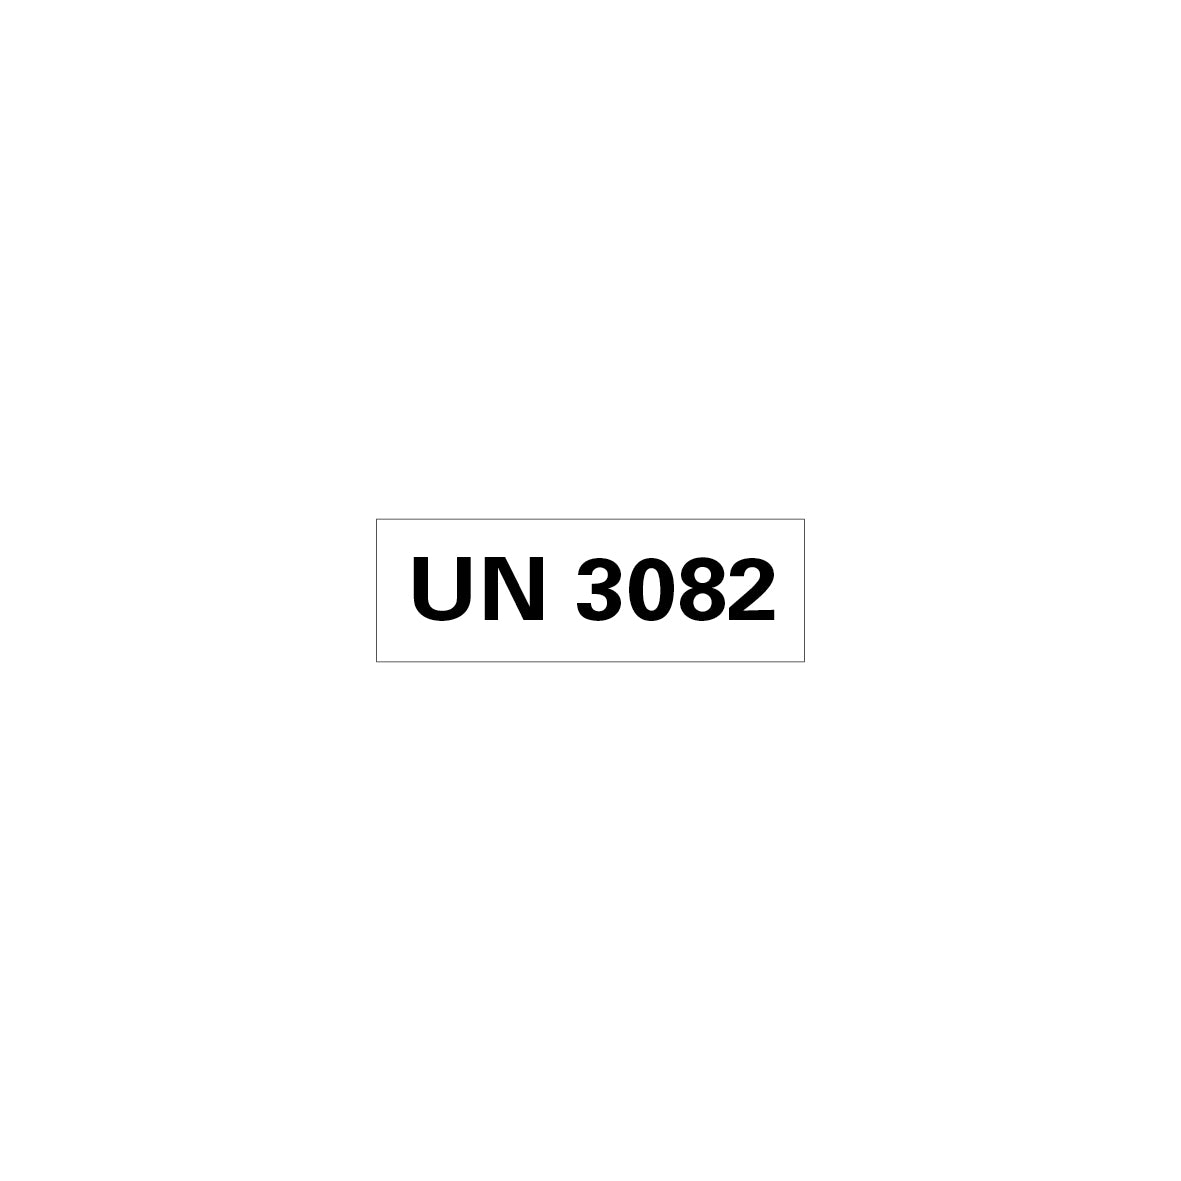 Gefahrgut UN, 5.0160.1, 150 x 50 mm, Stk., UN 3082 (umweltgefährlicher Stoff, flüssig), auf Bogen, VE 10 Stk.